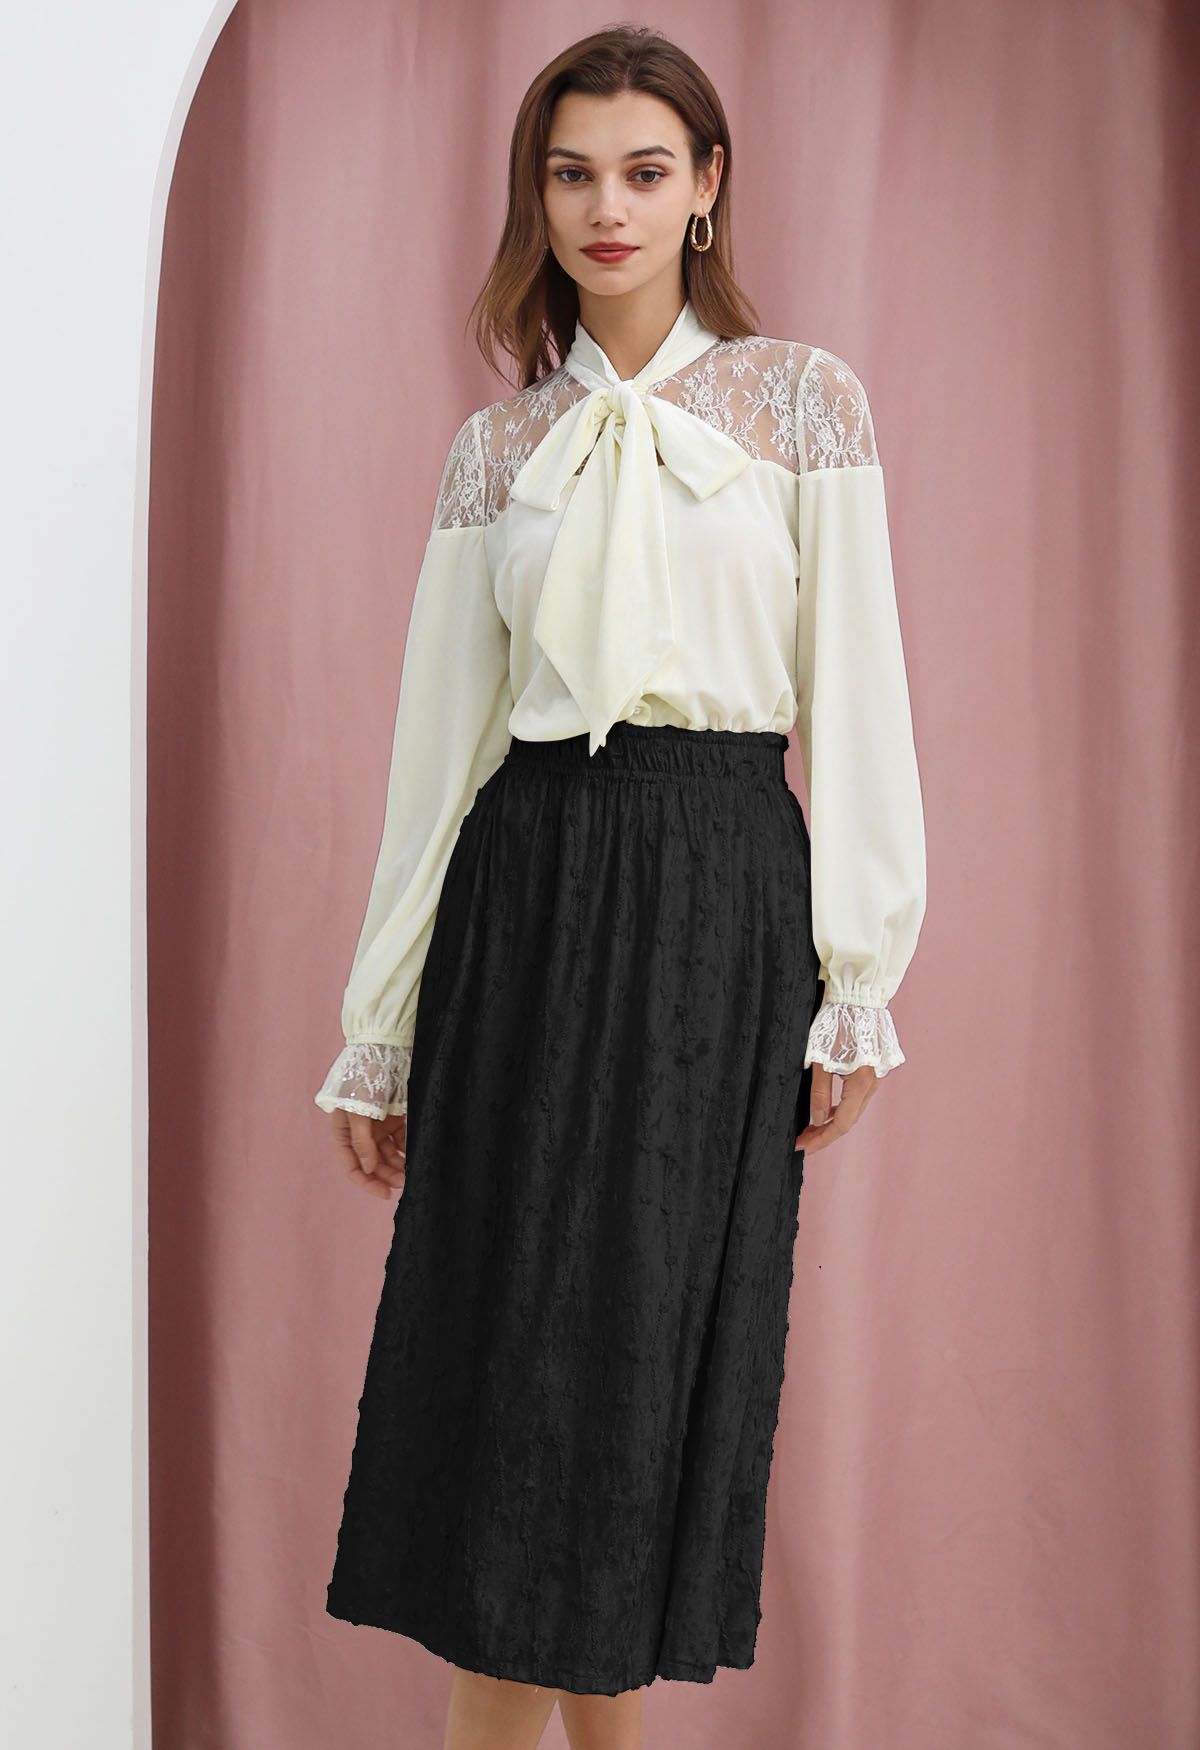 3D Floret Shimmer Fringe Velvet Midi Skirt in Black